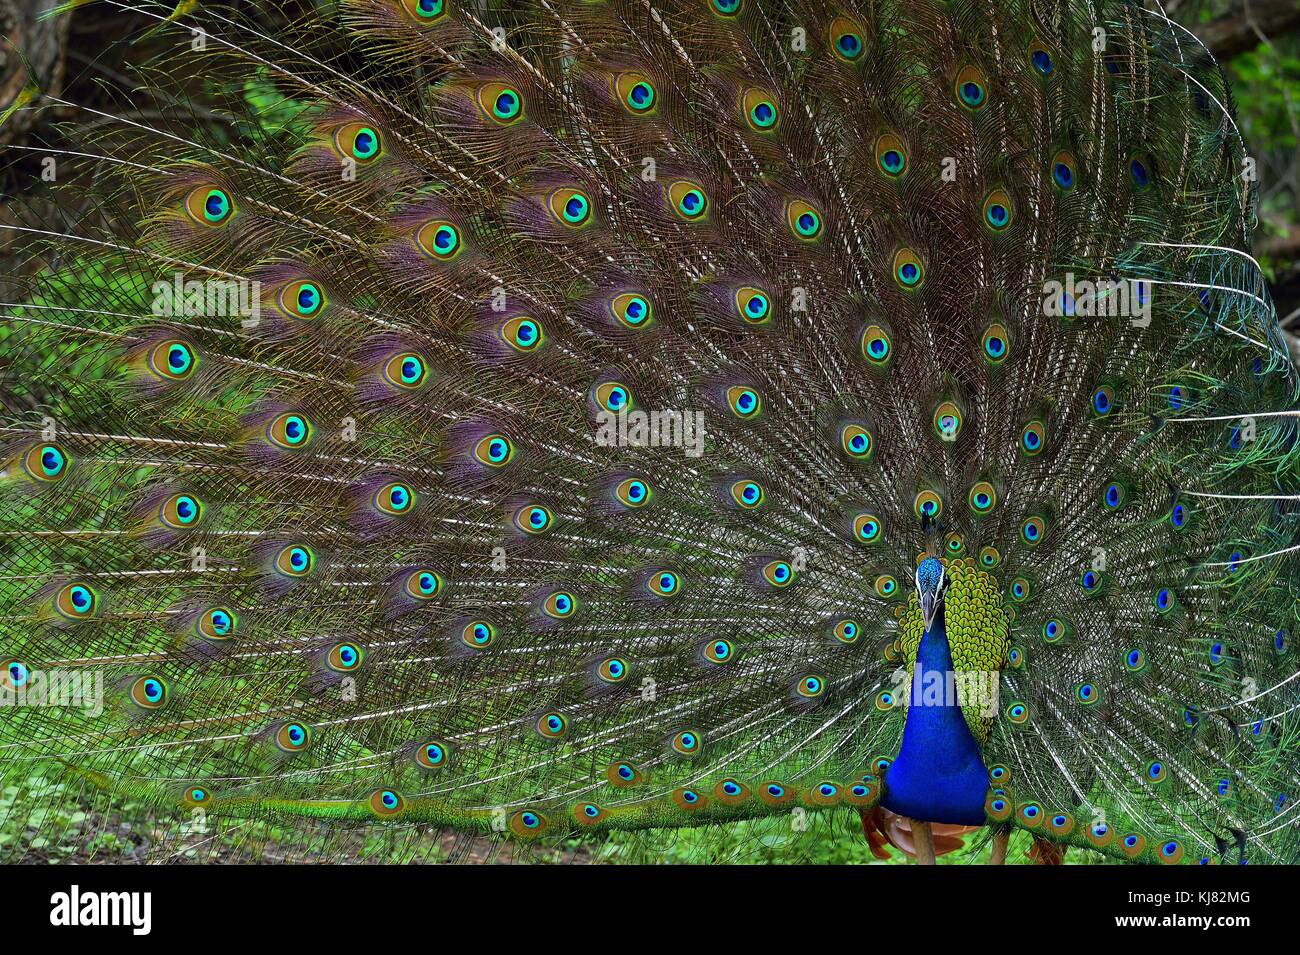 Ritratto di bellissimo pavone con le piume. indiano o peafowl peafowl blu (pavo cristatus). Yala National Park. sri lanka Foto Stock